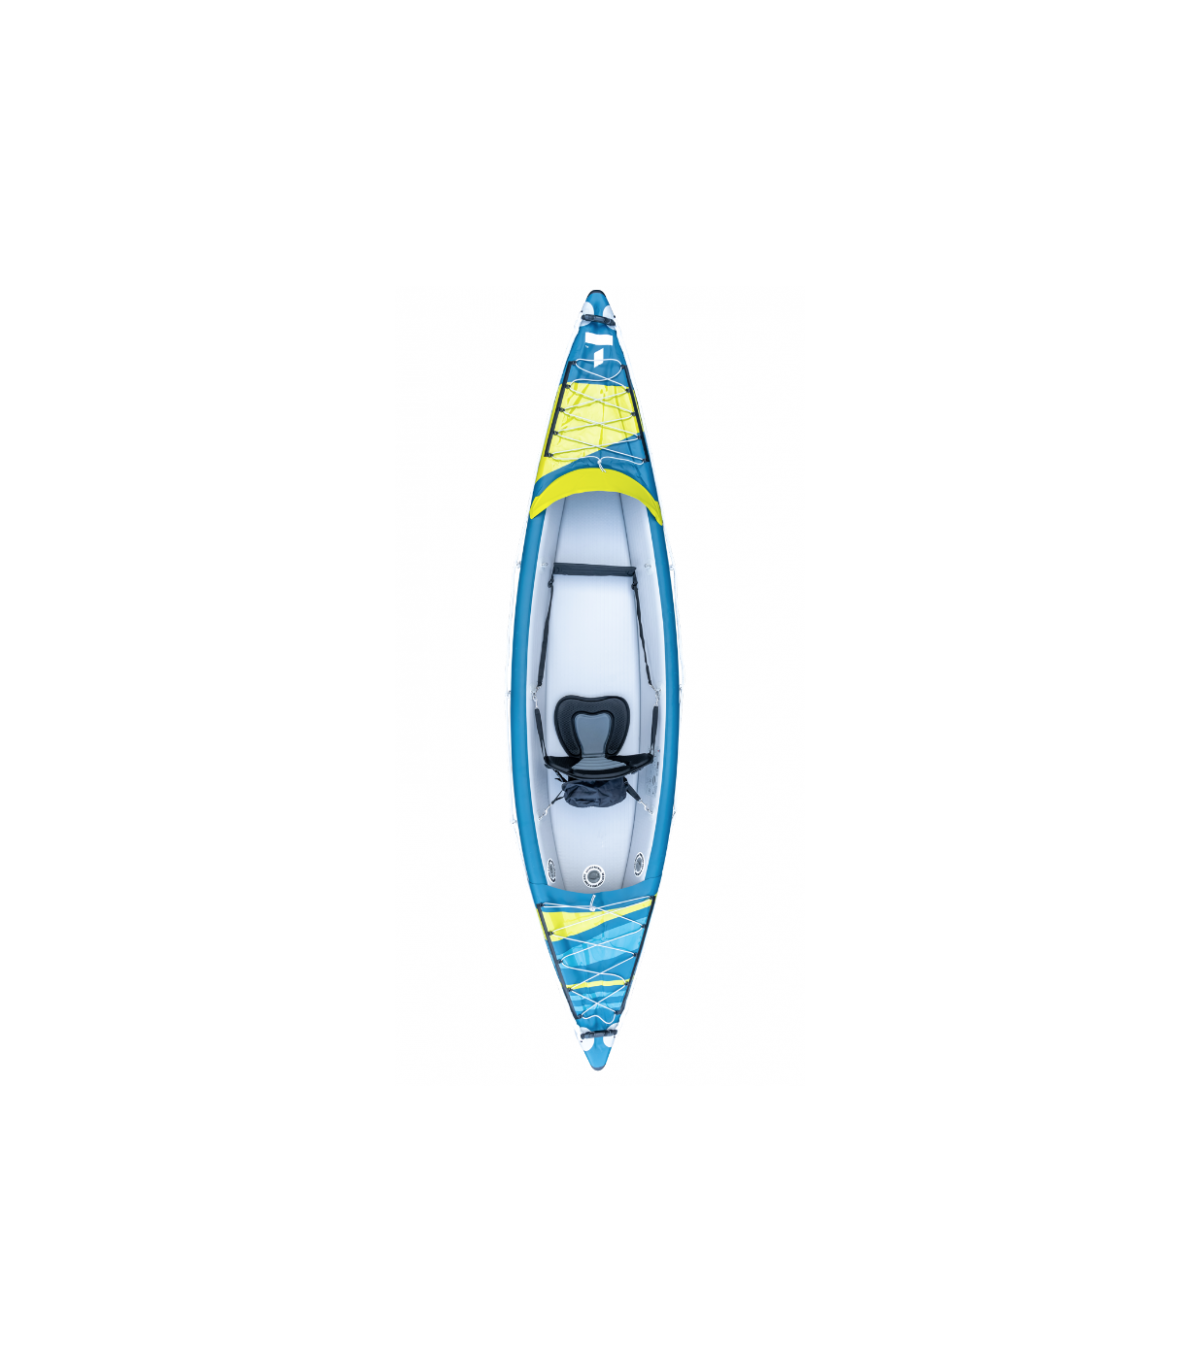 OFERTA - Kayak hinchable Air Breeze Full HP1